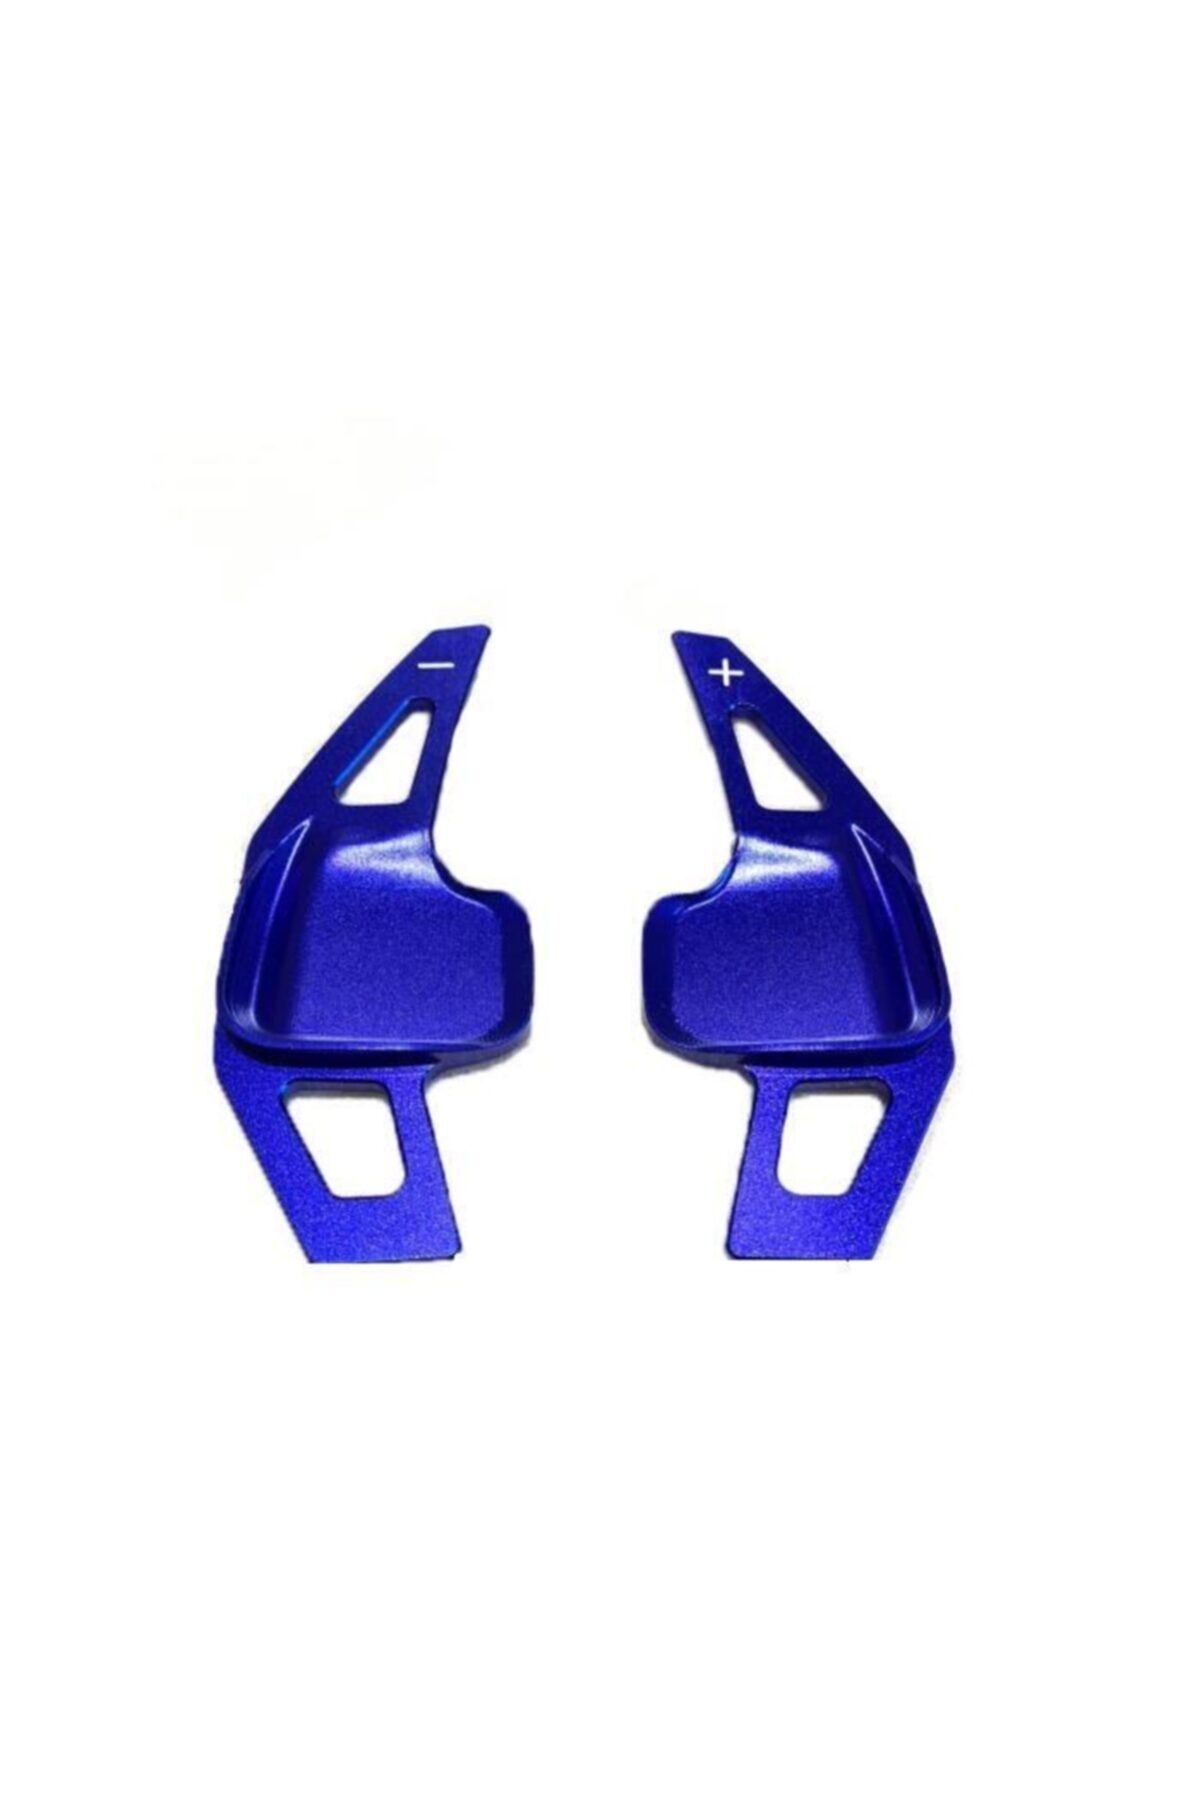 OLED GARAJ Bmw 3, 4, 5 Serisi İçin Uyumlu Kulakçık Pedal Shıft Paddle Shift F1 Mavi